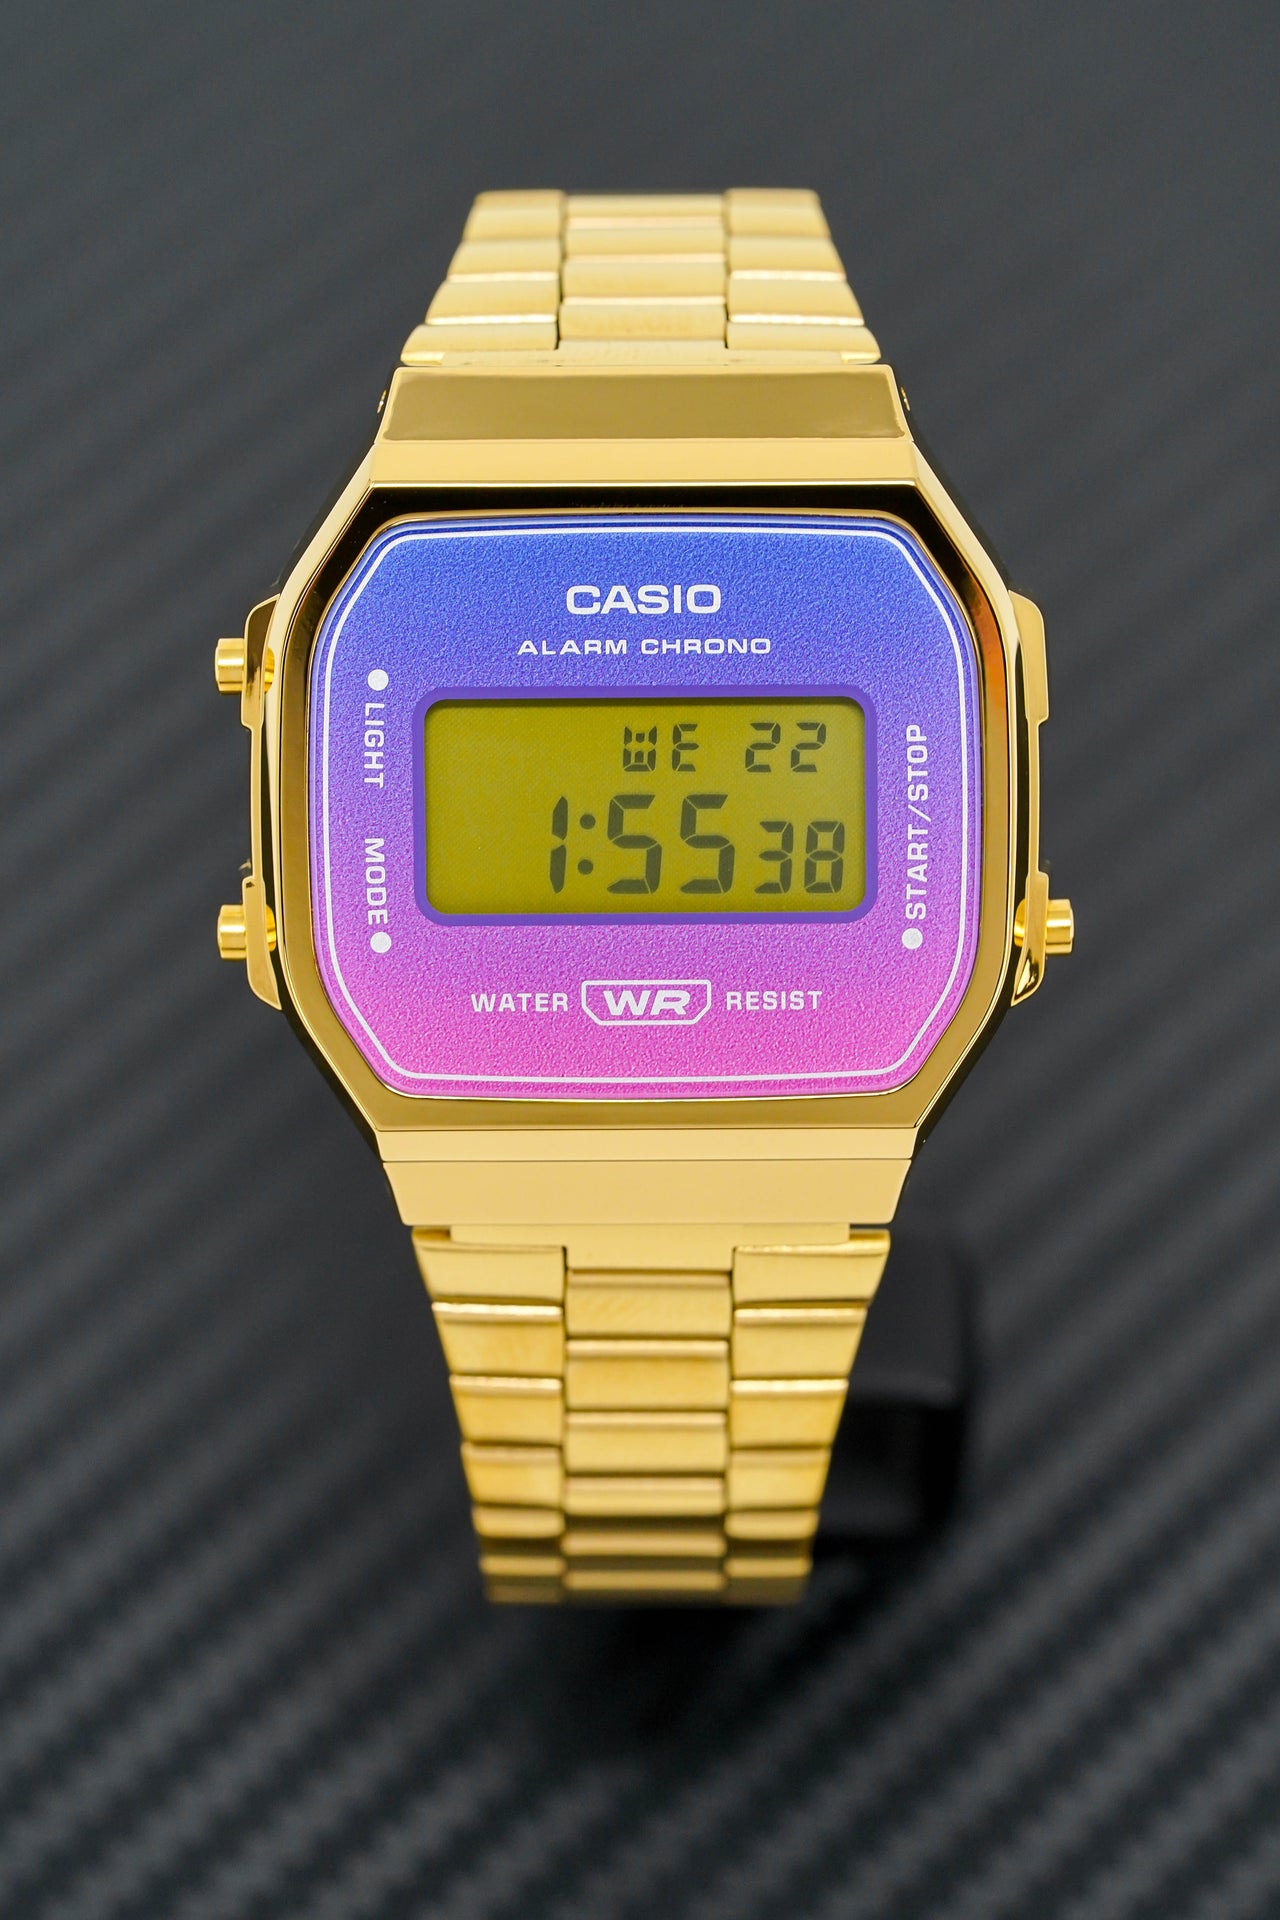 Casio Watch Digital Vintage Gold Pink/Purple A168WERG-2ADF